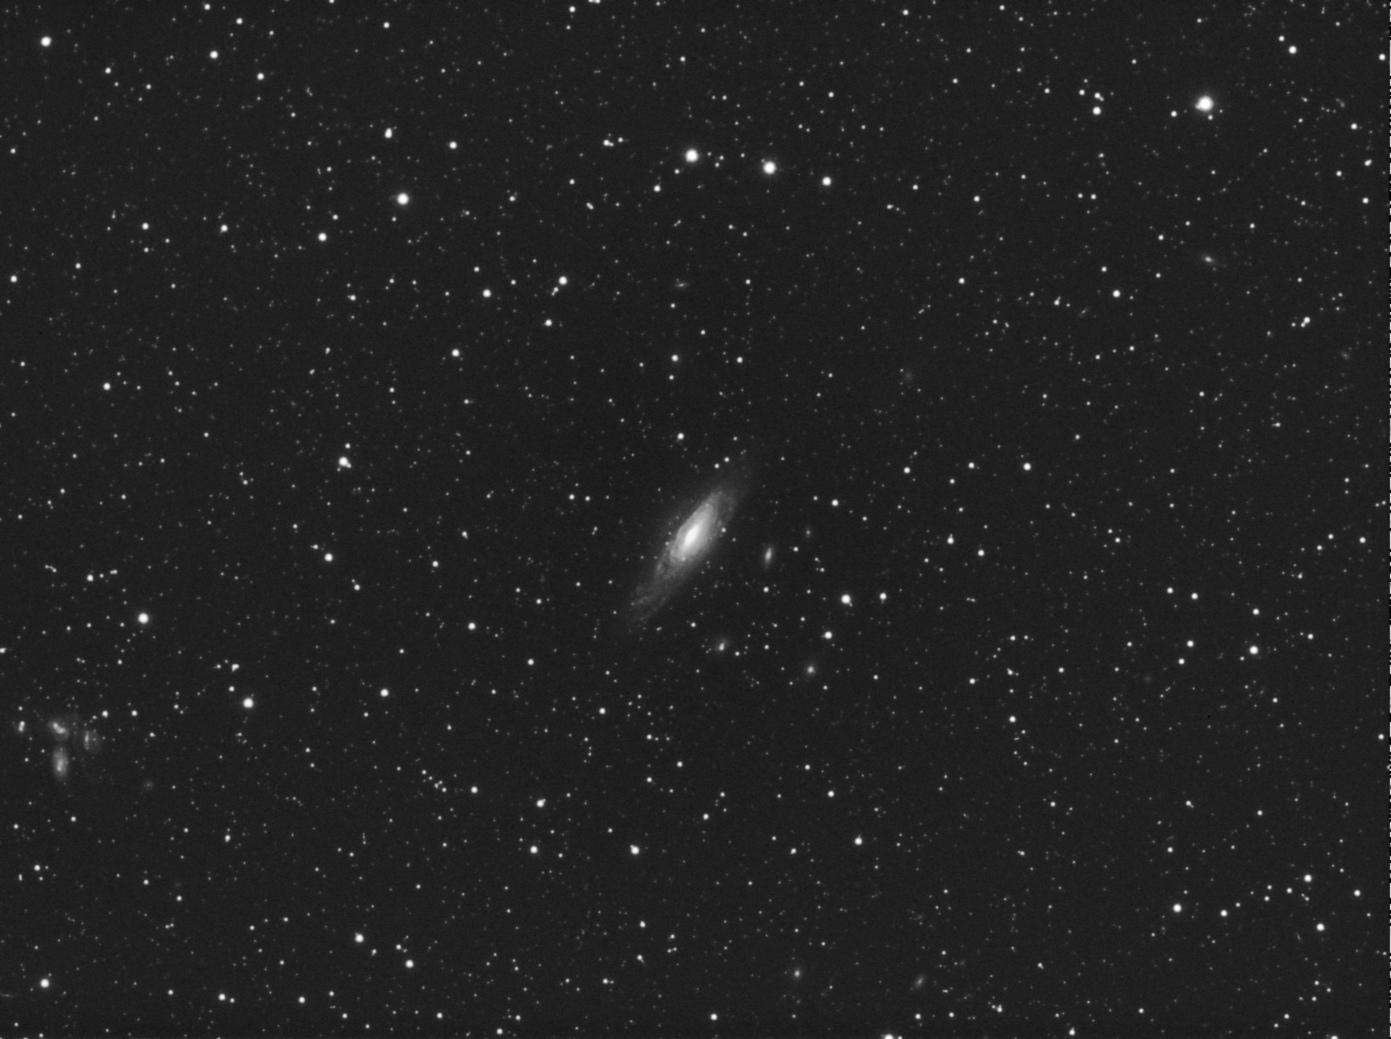 59da787e2da9b_NGC7331L314fc-100correcteurfc35.jpg.293bf54d1d7ee68eaa9d54635aaced0d.jpg